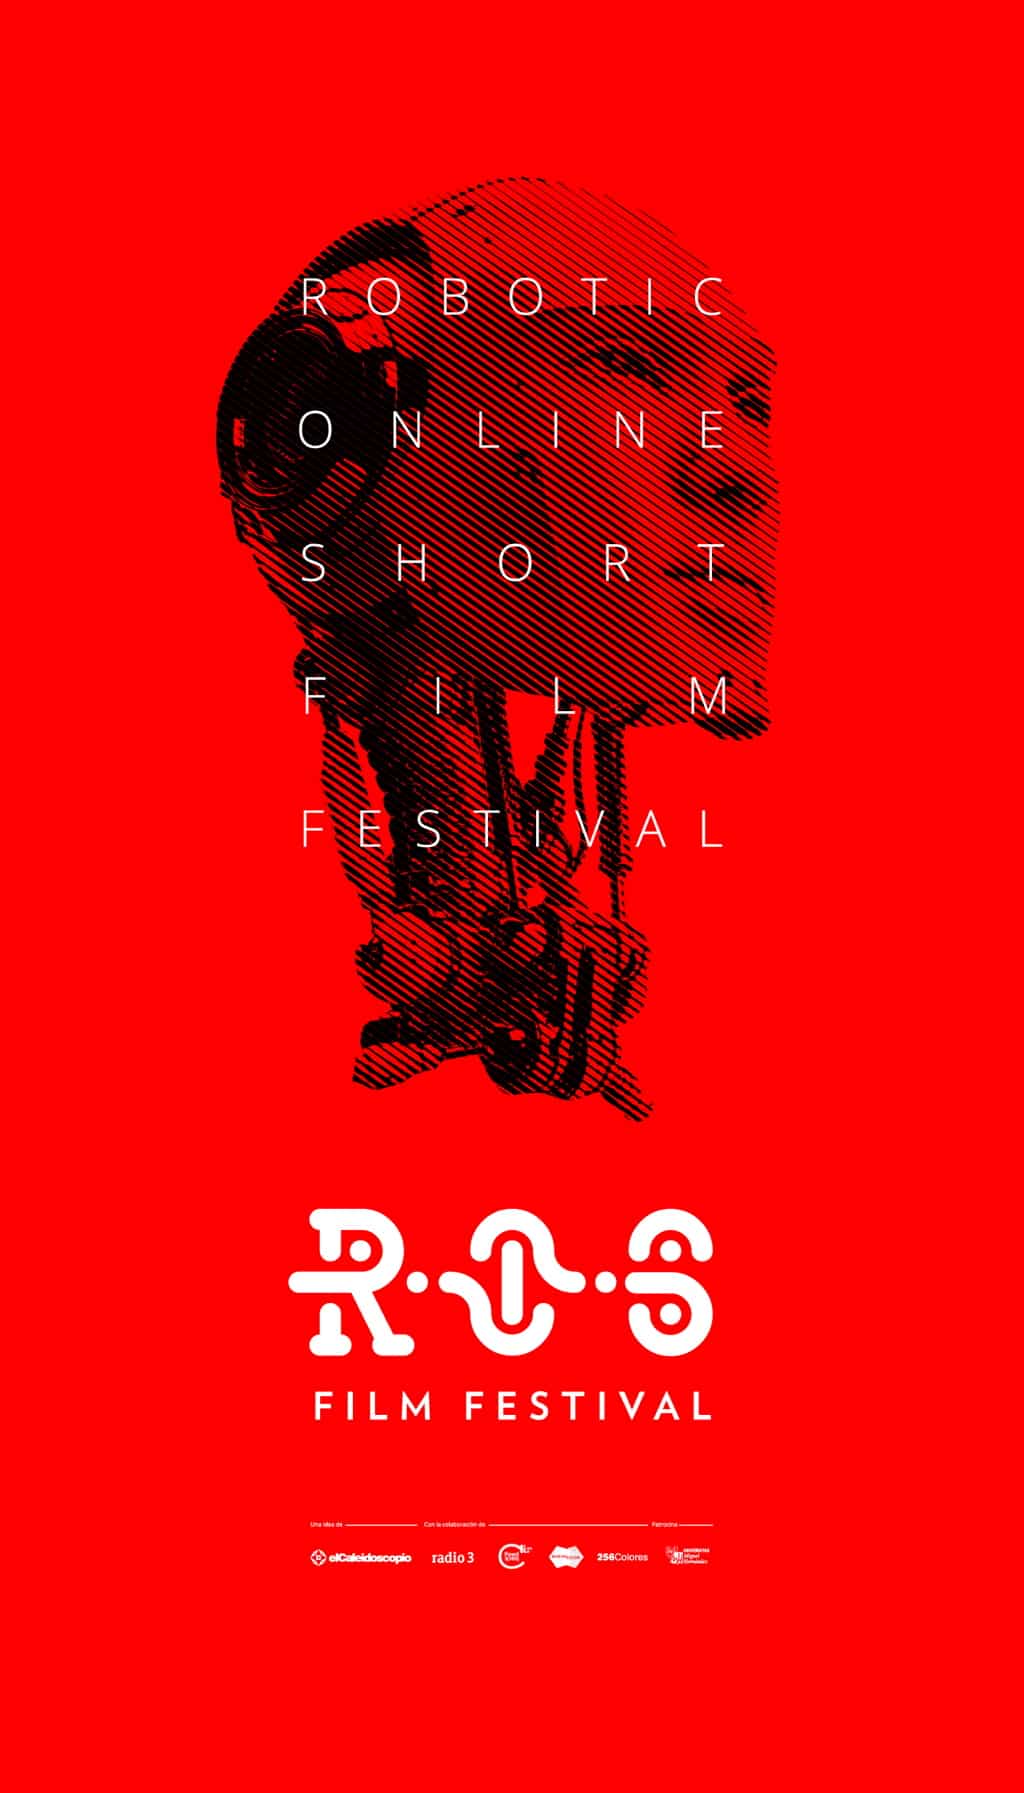 Ya podéis ver el corto ganador del Festival de Cine Robótico